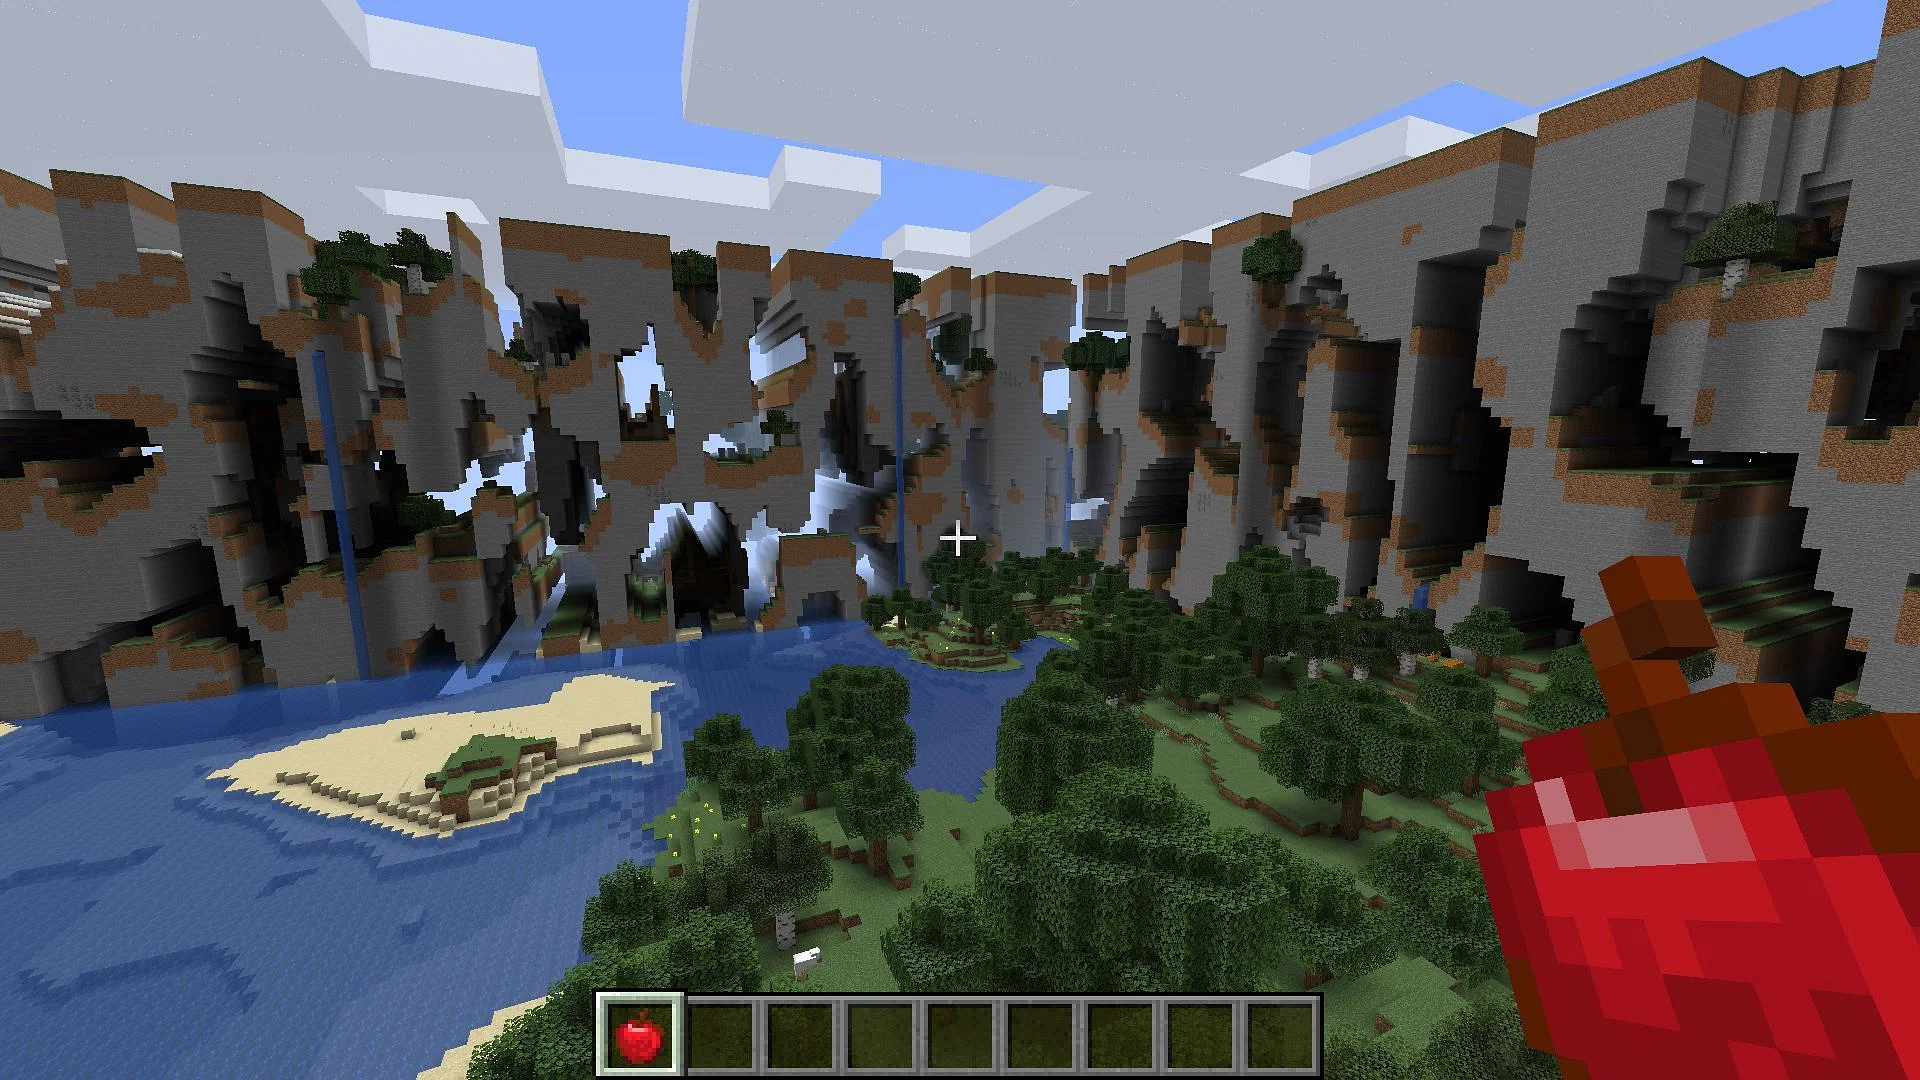 Minecraft far lands, showing distorted terrain